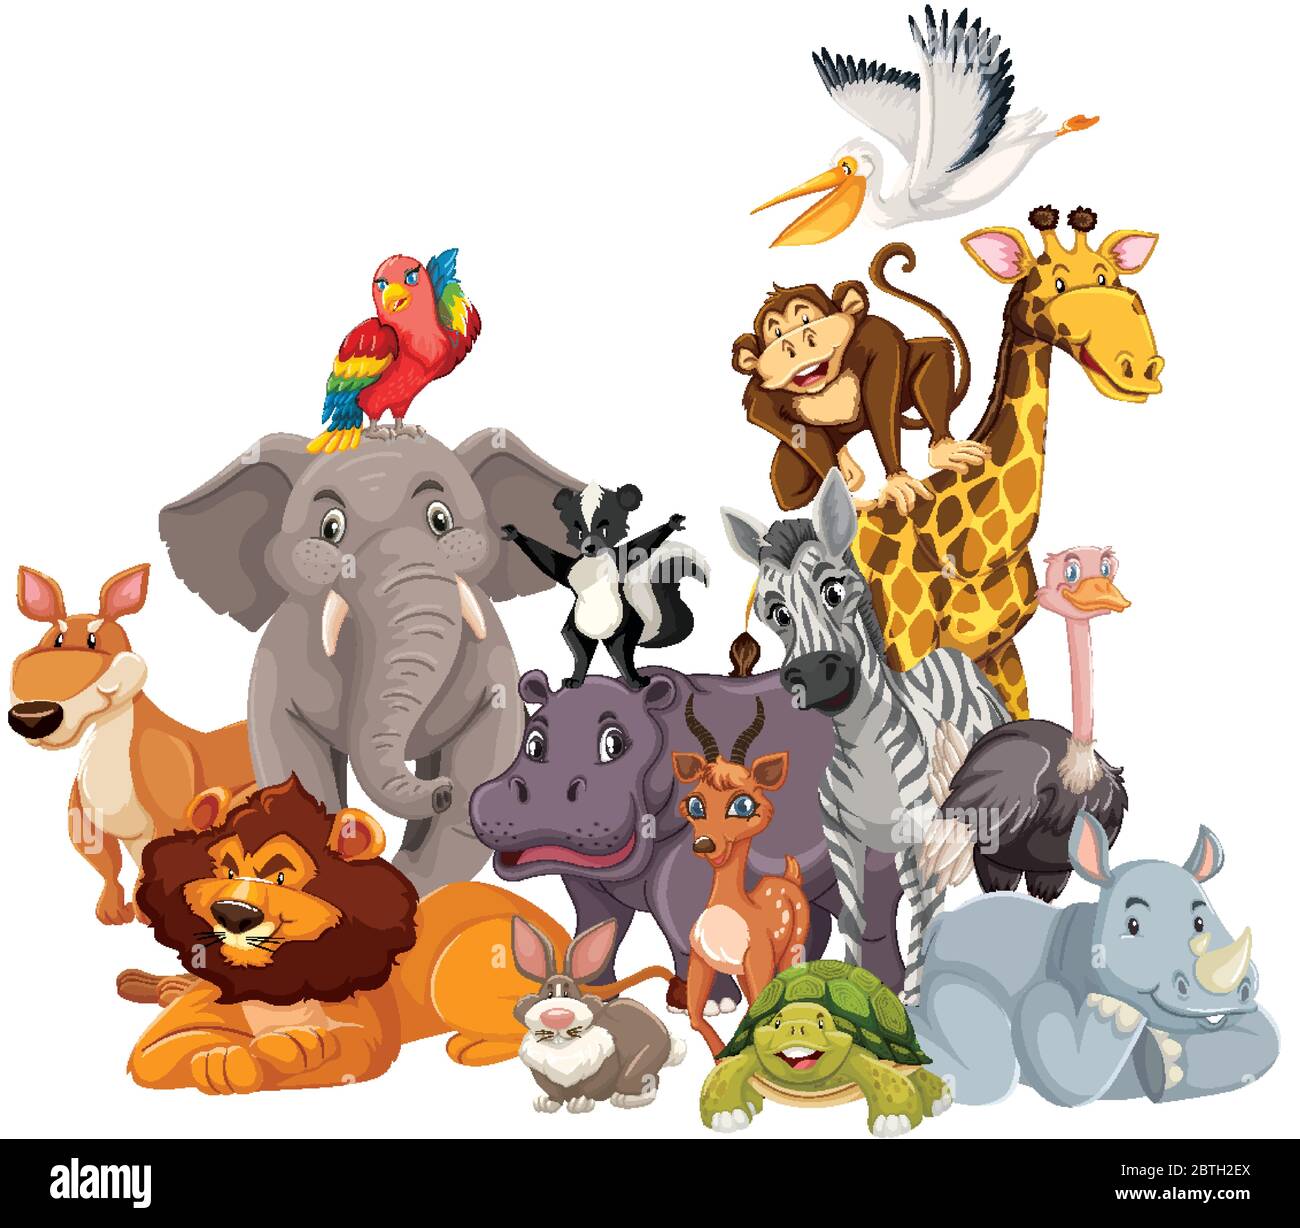 Illustration de personnages de dessins animés de groupe d'animaux sauvages Illustration de Vecteur